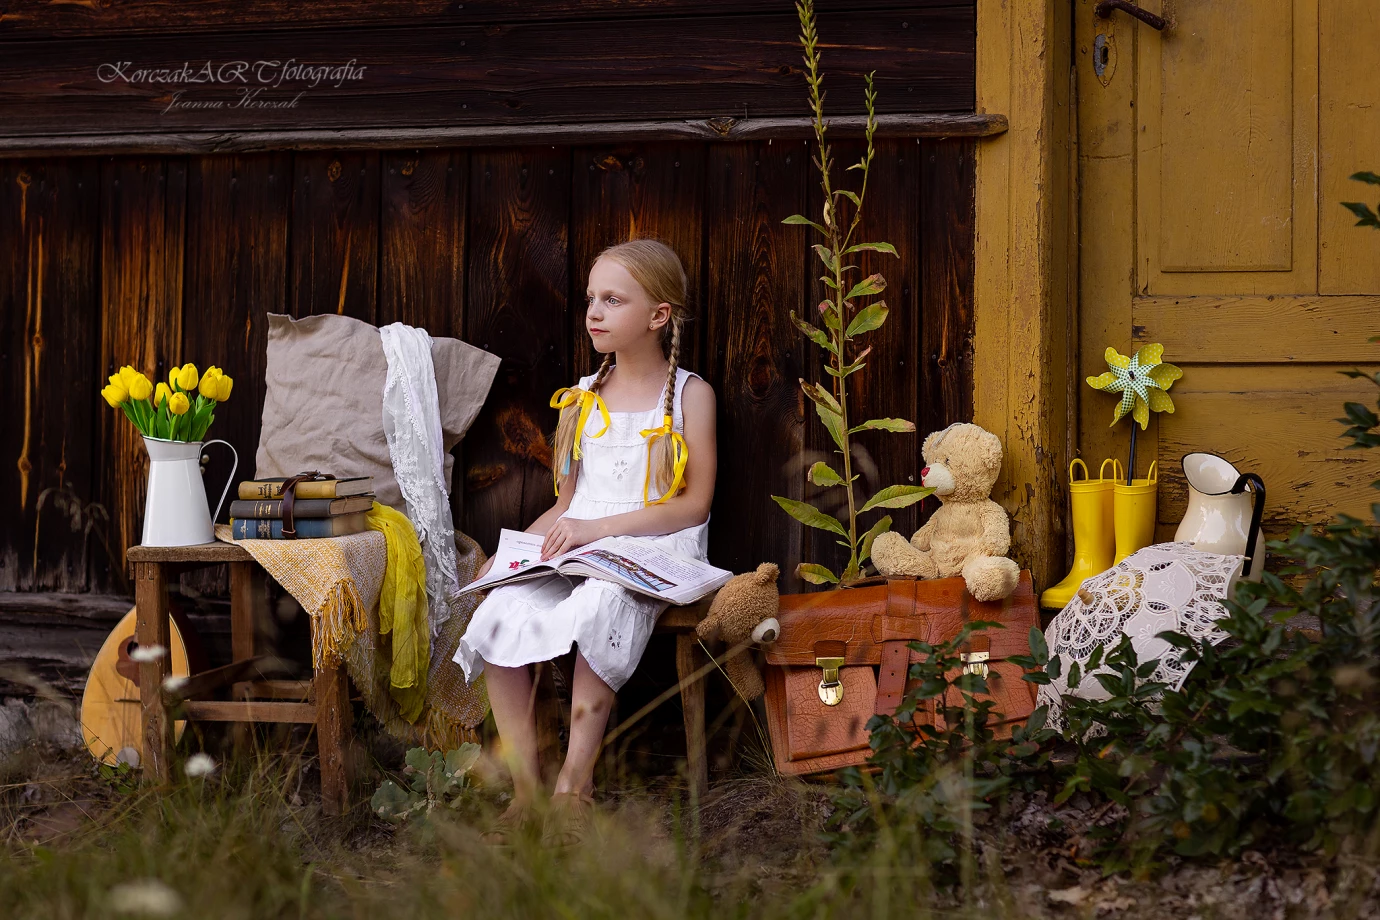 fotograf radzymin joanna-korczak-korczak-art-fotografia portfolio sesje dzieciece fotografia dziecieca sesja urodzinowa